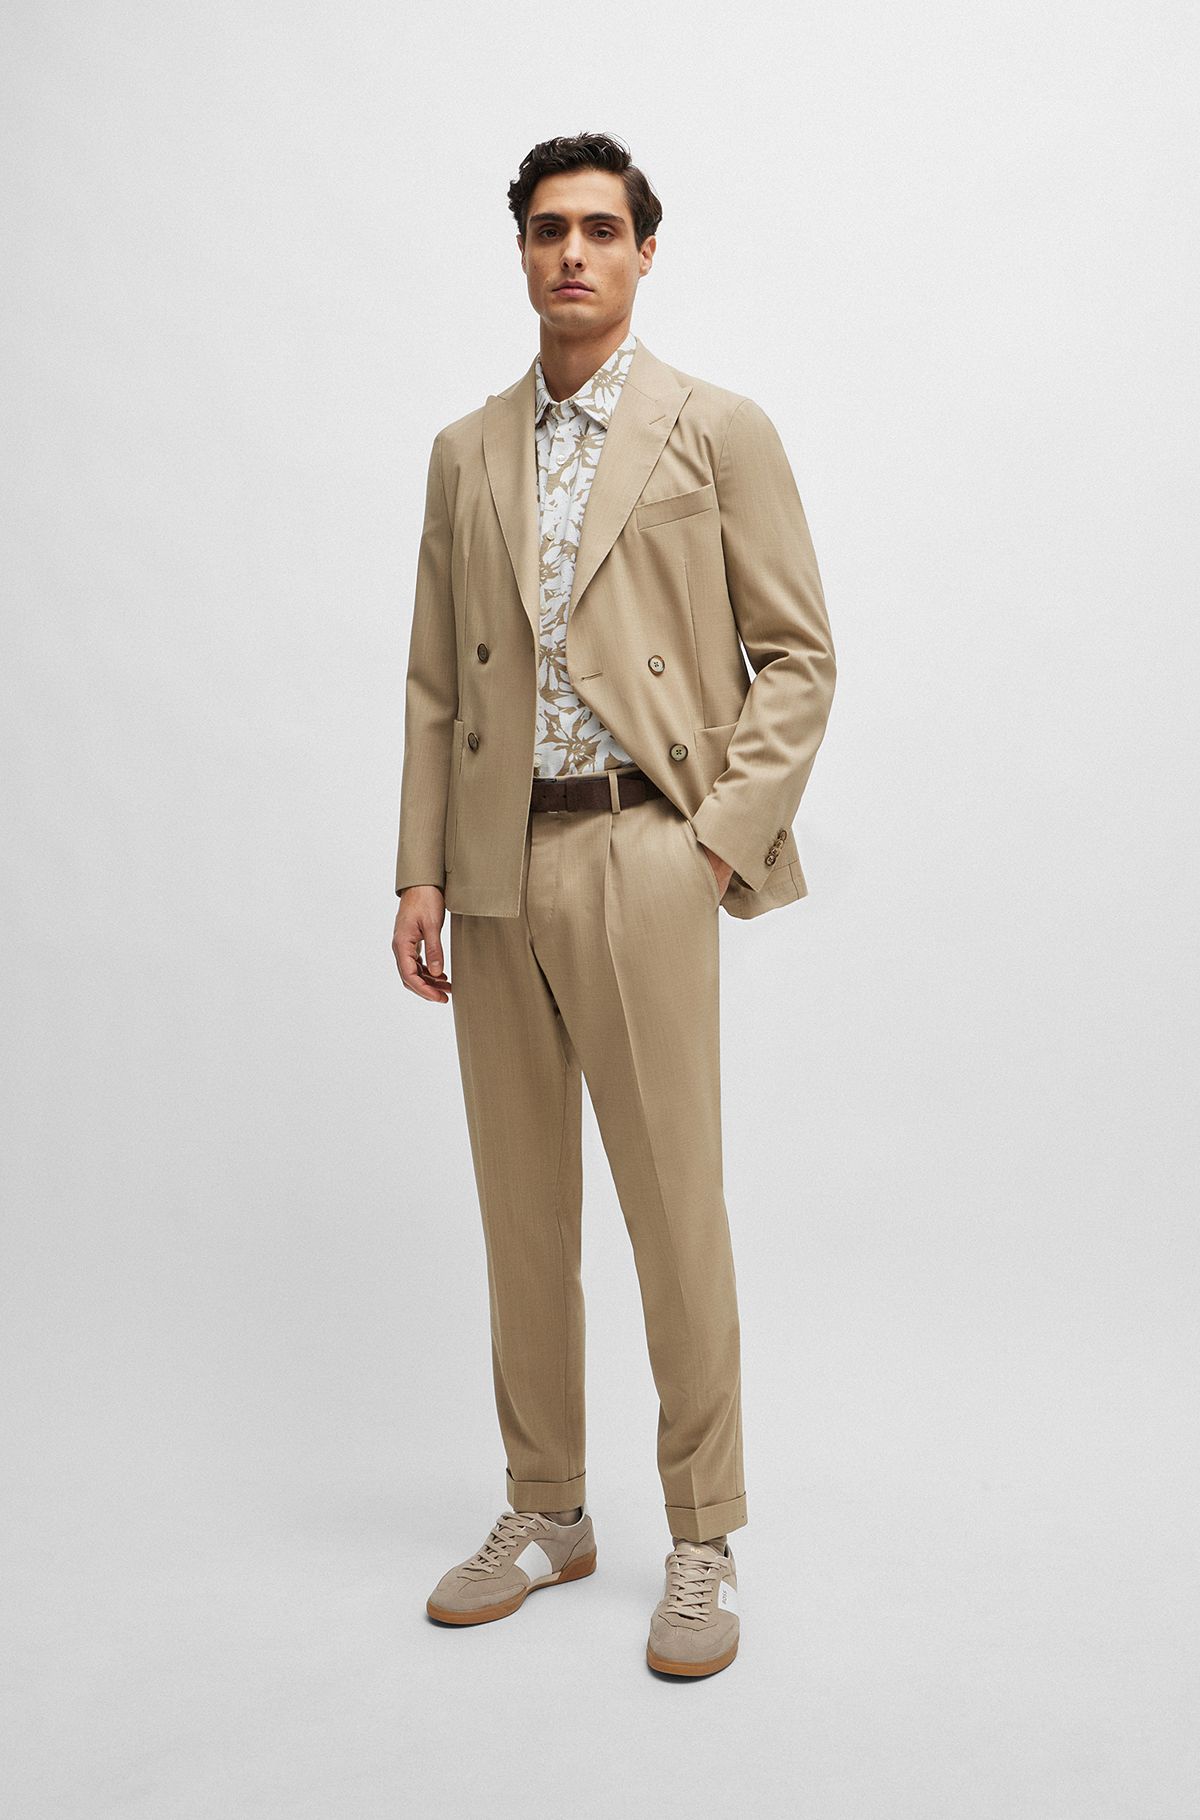 Men Linen Suits Wedding Linen Suit Men Party Suit Groom's Men Linen Suit  Beach Wedding Suit Elegant Suits For Men 3 Piece Slim Fit Suit -   Portugal